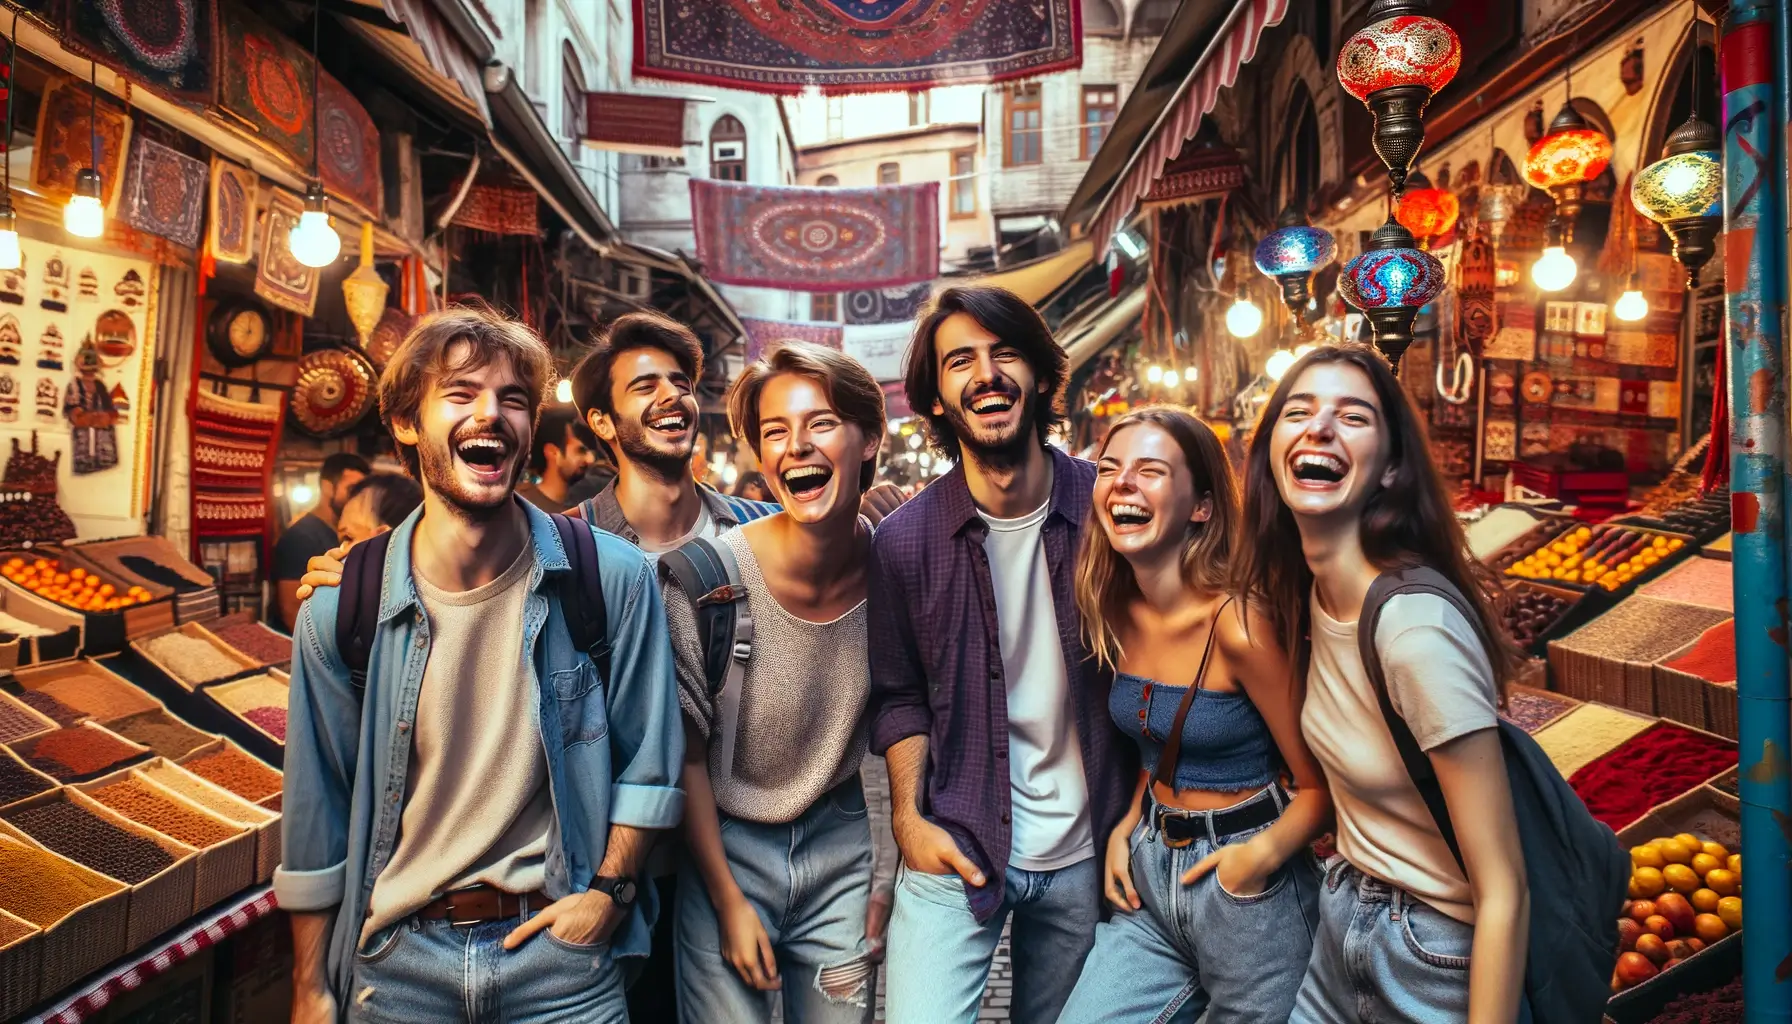 Изображение компании молодежи, весело проводящей время на базаре в Стамбуле.